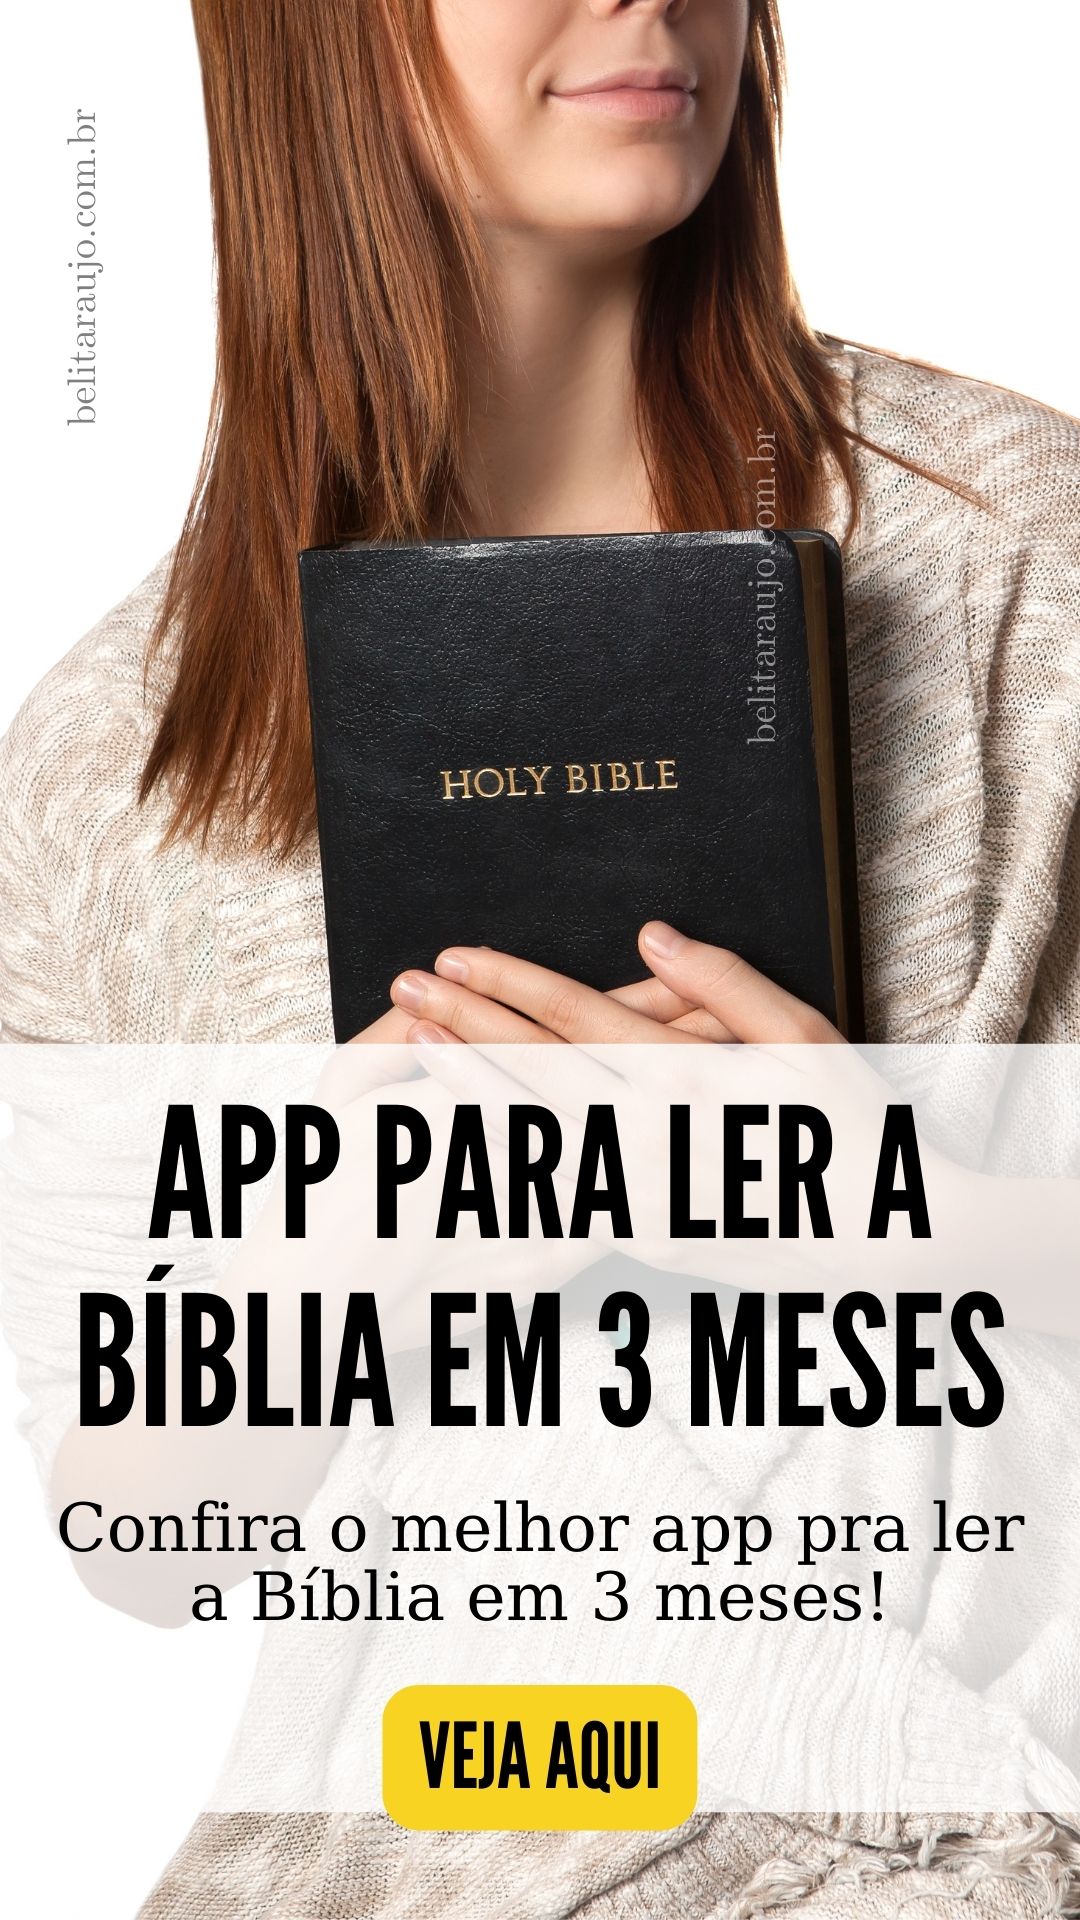 App para ler a bíblia em 3 meses. Confira o melhor app pra ler a Bíblia